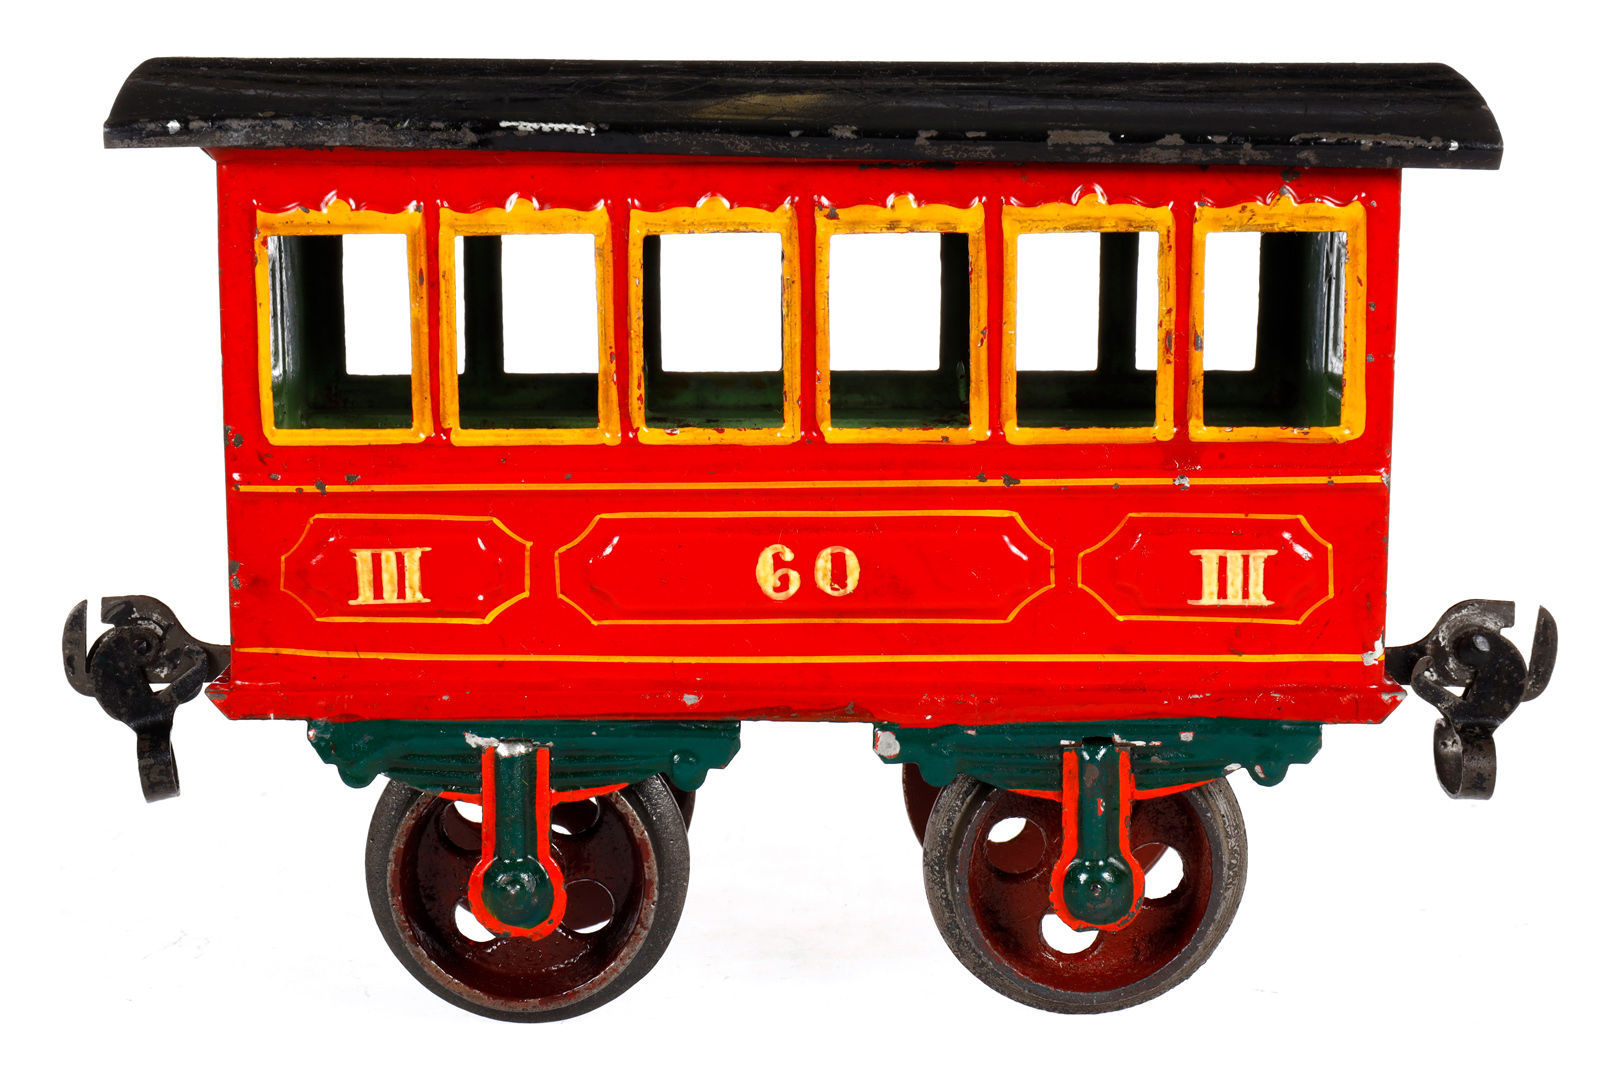 Märklin Personenwagen 1805, Spur 2, Spurweite 54, uralt, rot, HL, mit 2 Sitzbänken, Ringkupplungen